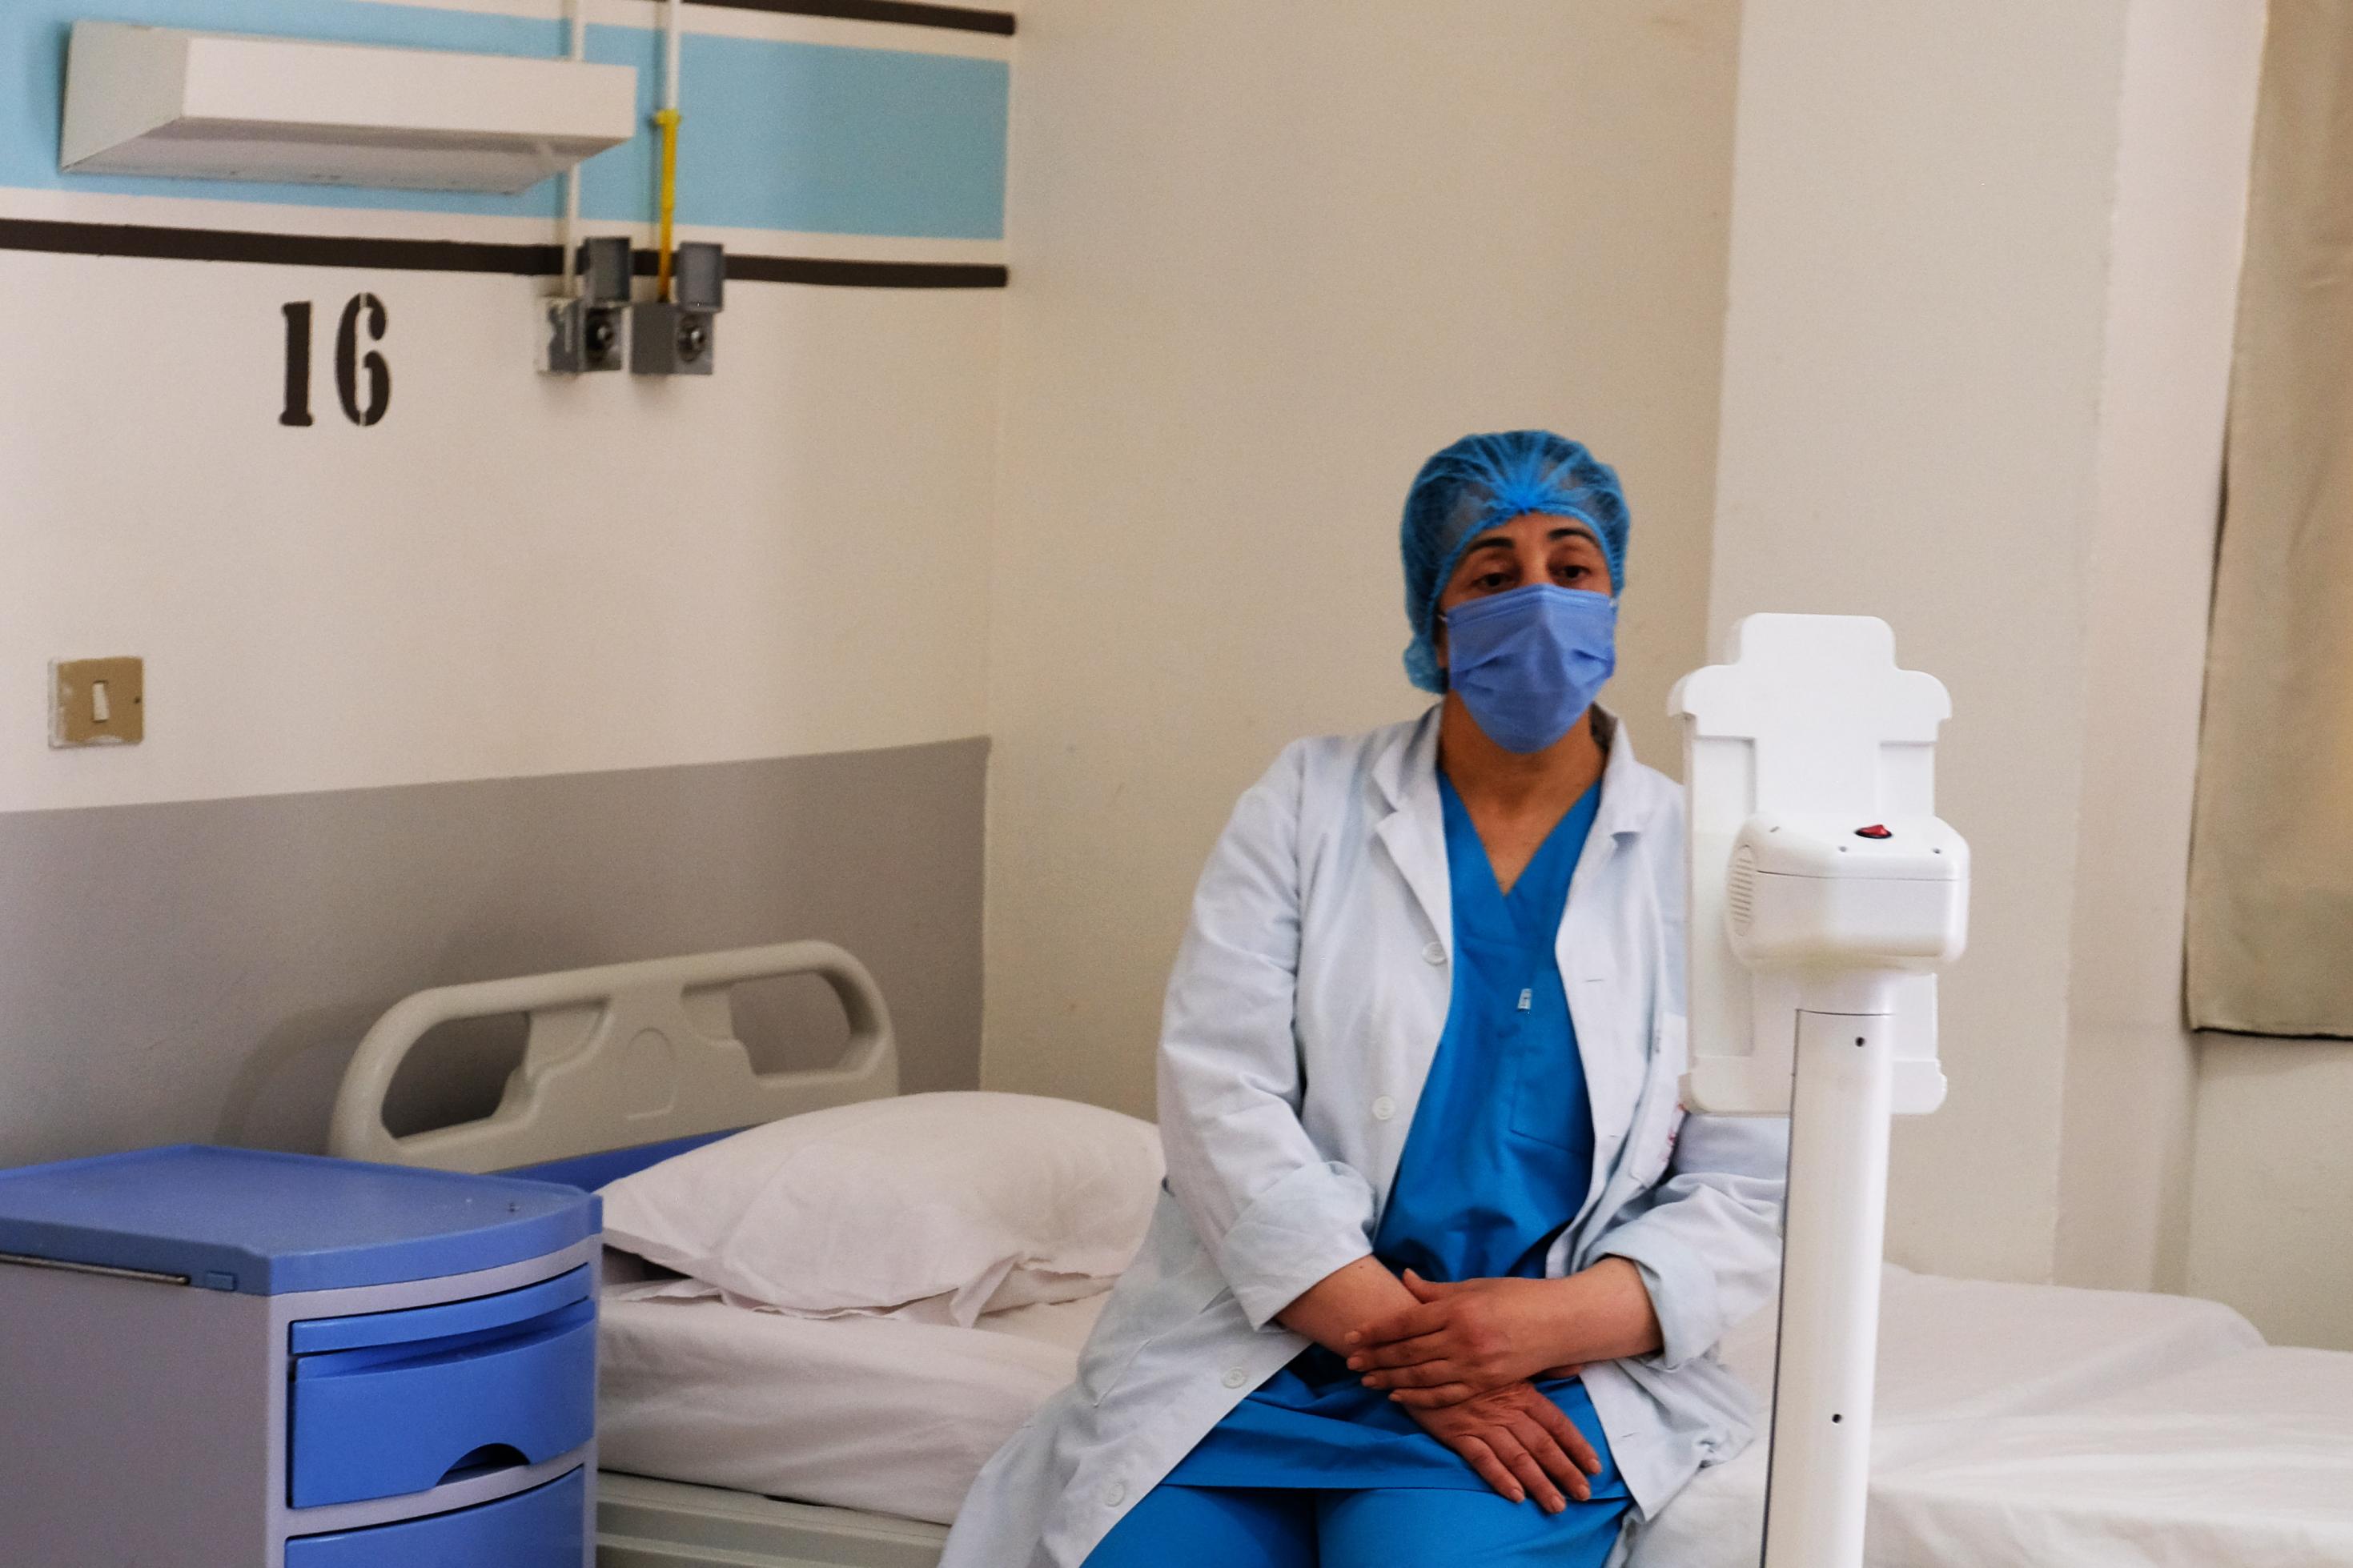 Eine Krankenpflegerin mit Kittel und Maske sitzt auf einem Krankenbett und schaut einen kleinen Roboter an.